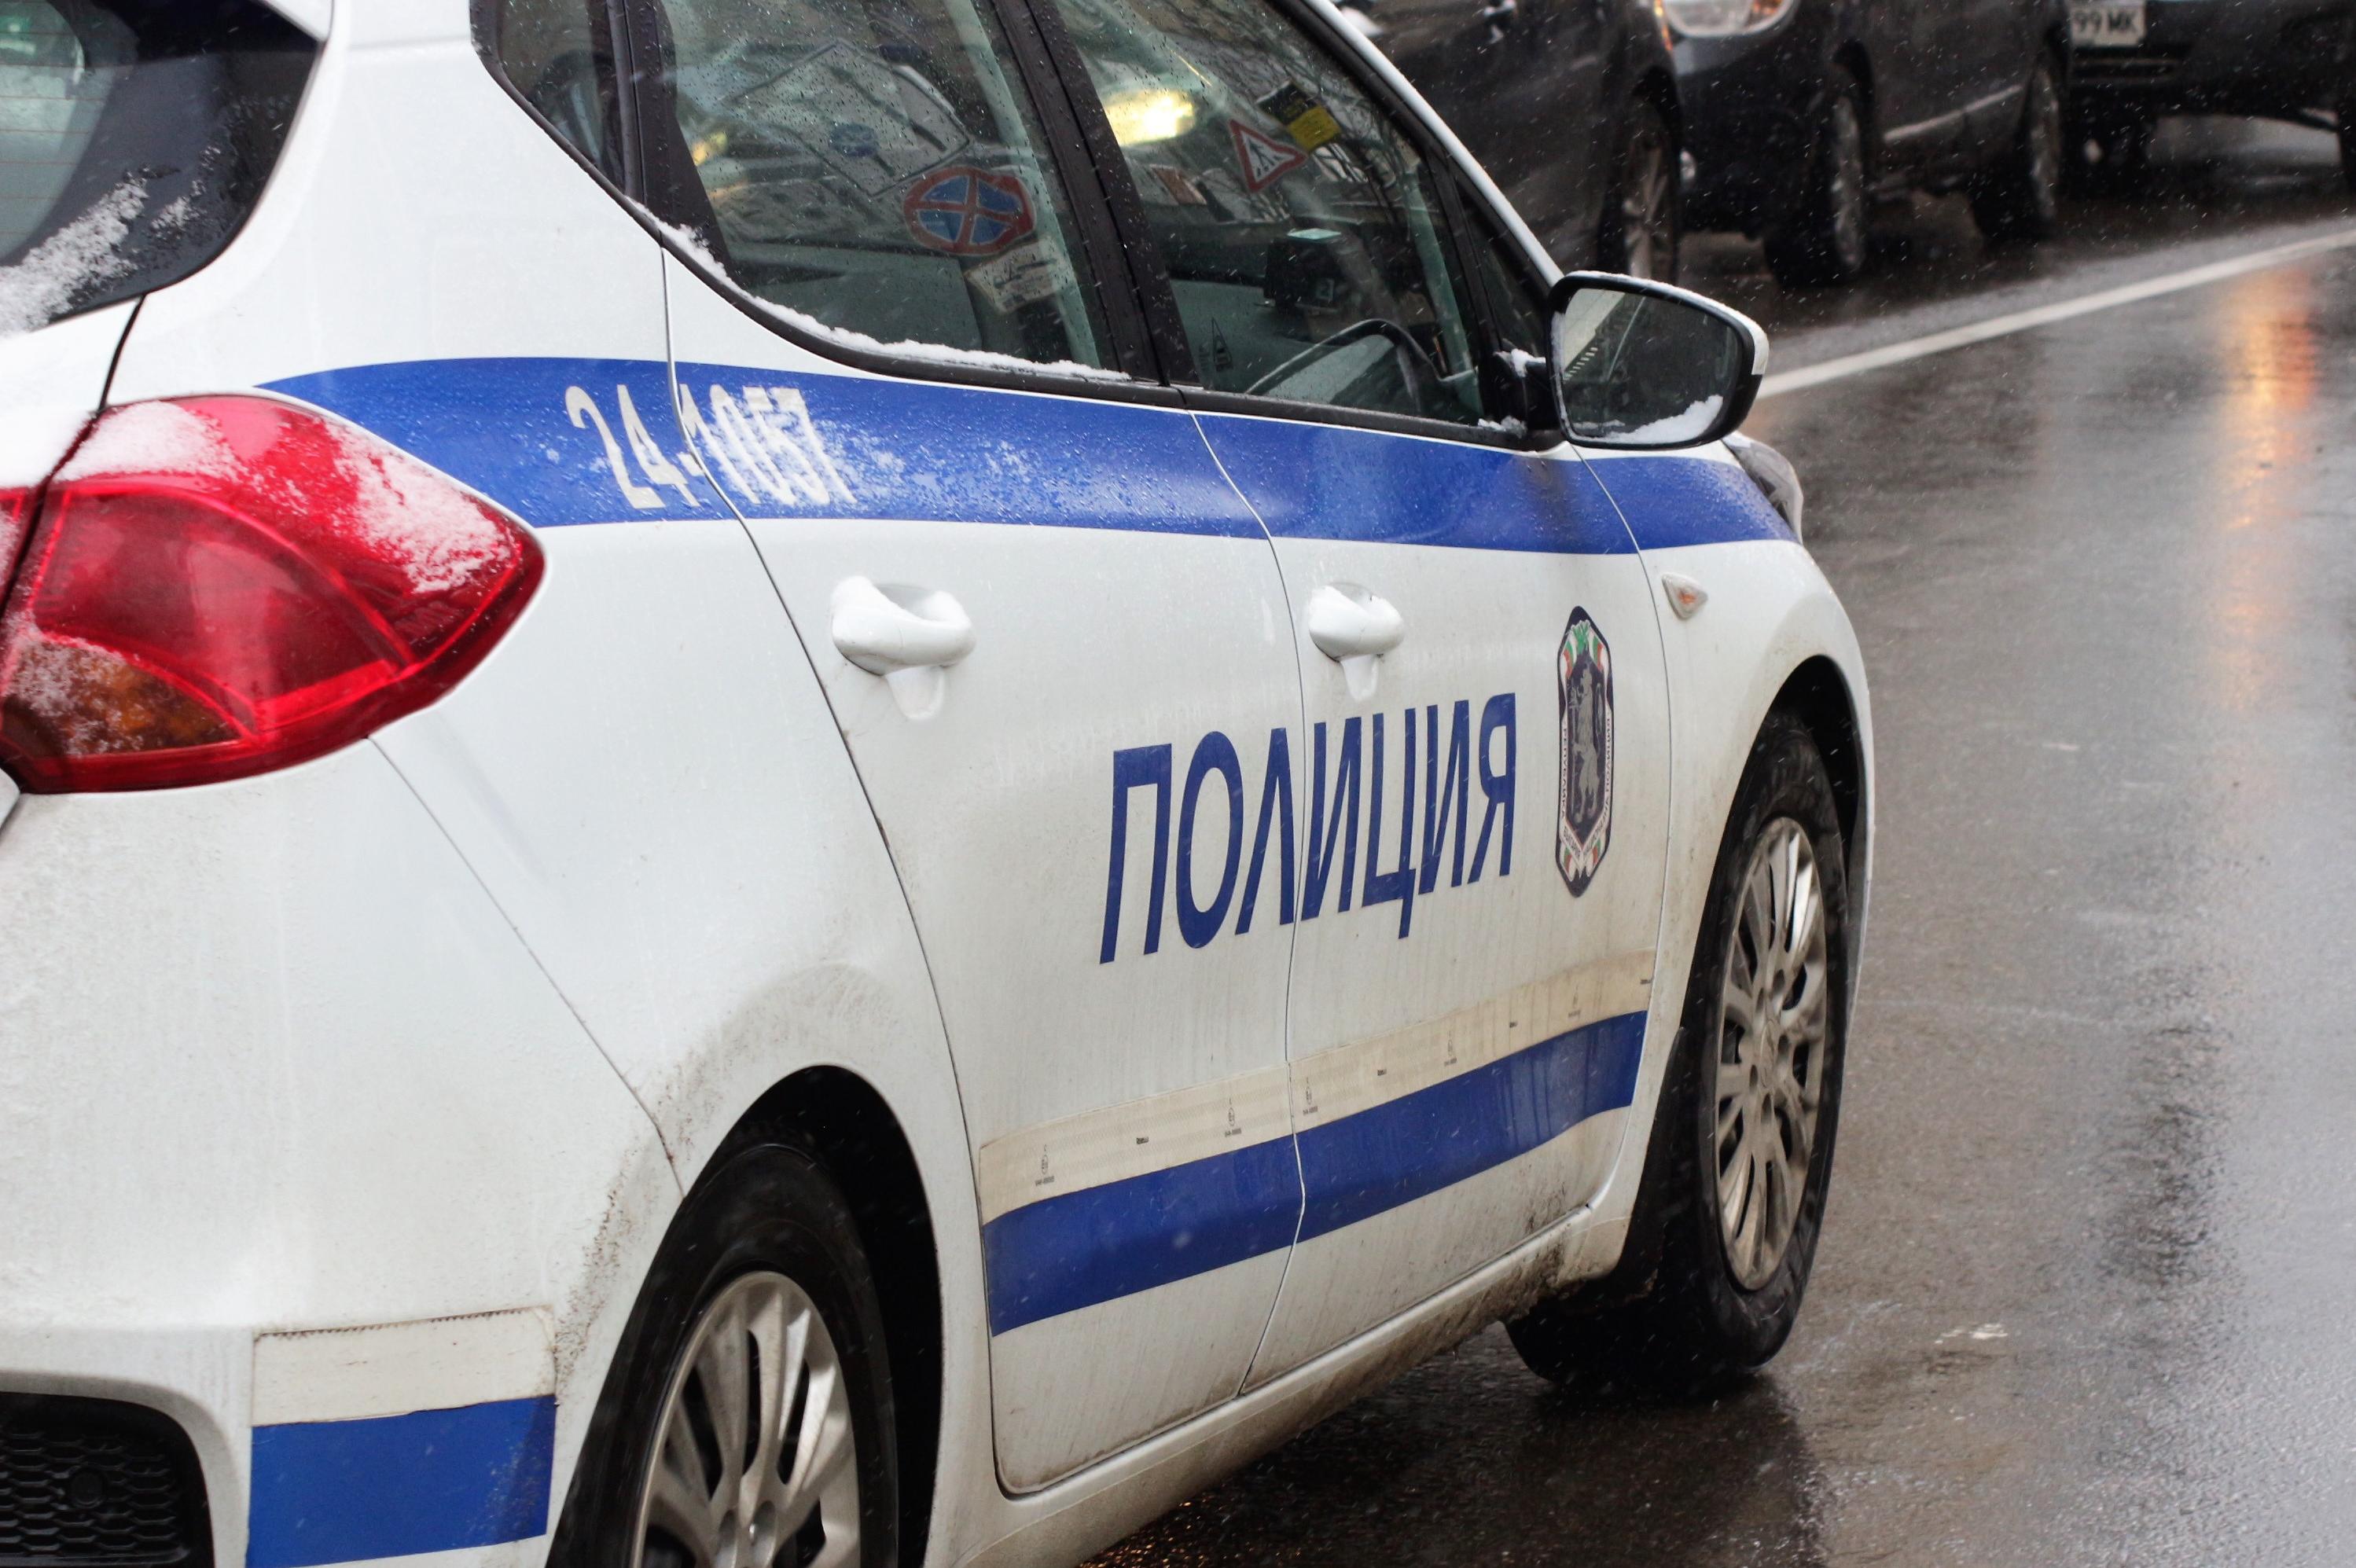 25-годишен с присъда нападнал жена пред храм в Самоков, задържан е